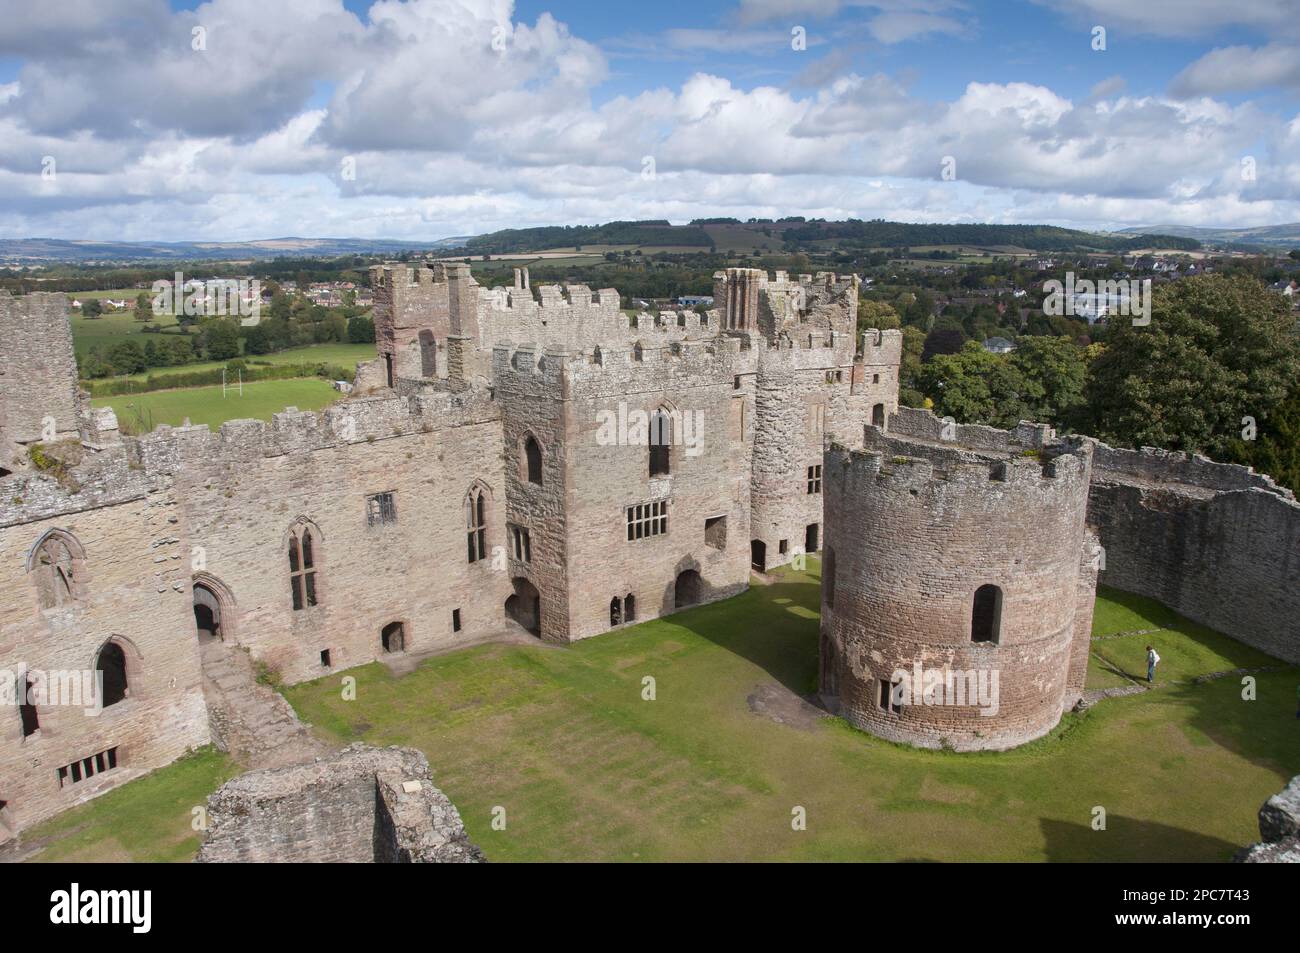 Vue sur le château partiellement détruit, le château de Ludlow, Ludlow, Shropshire, Angleterre, Royaume-Uni Banque D'Images